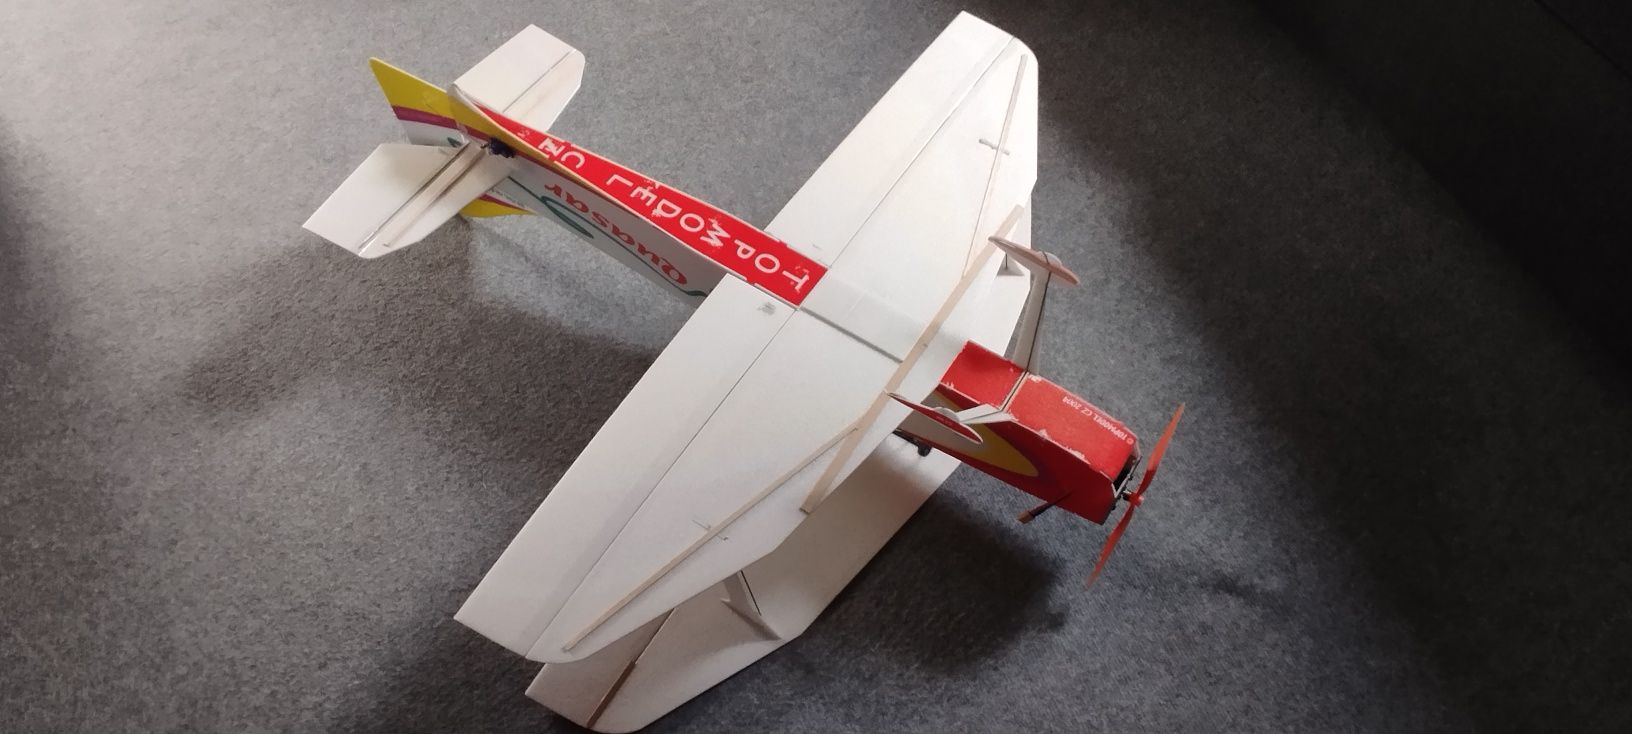 Samolot RC model 3d akrobacyjny zdalnie sterowany + gratis